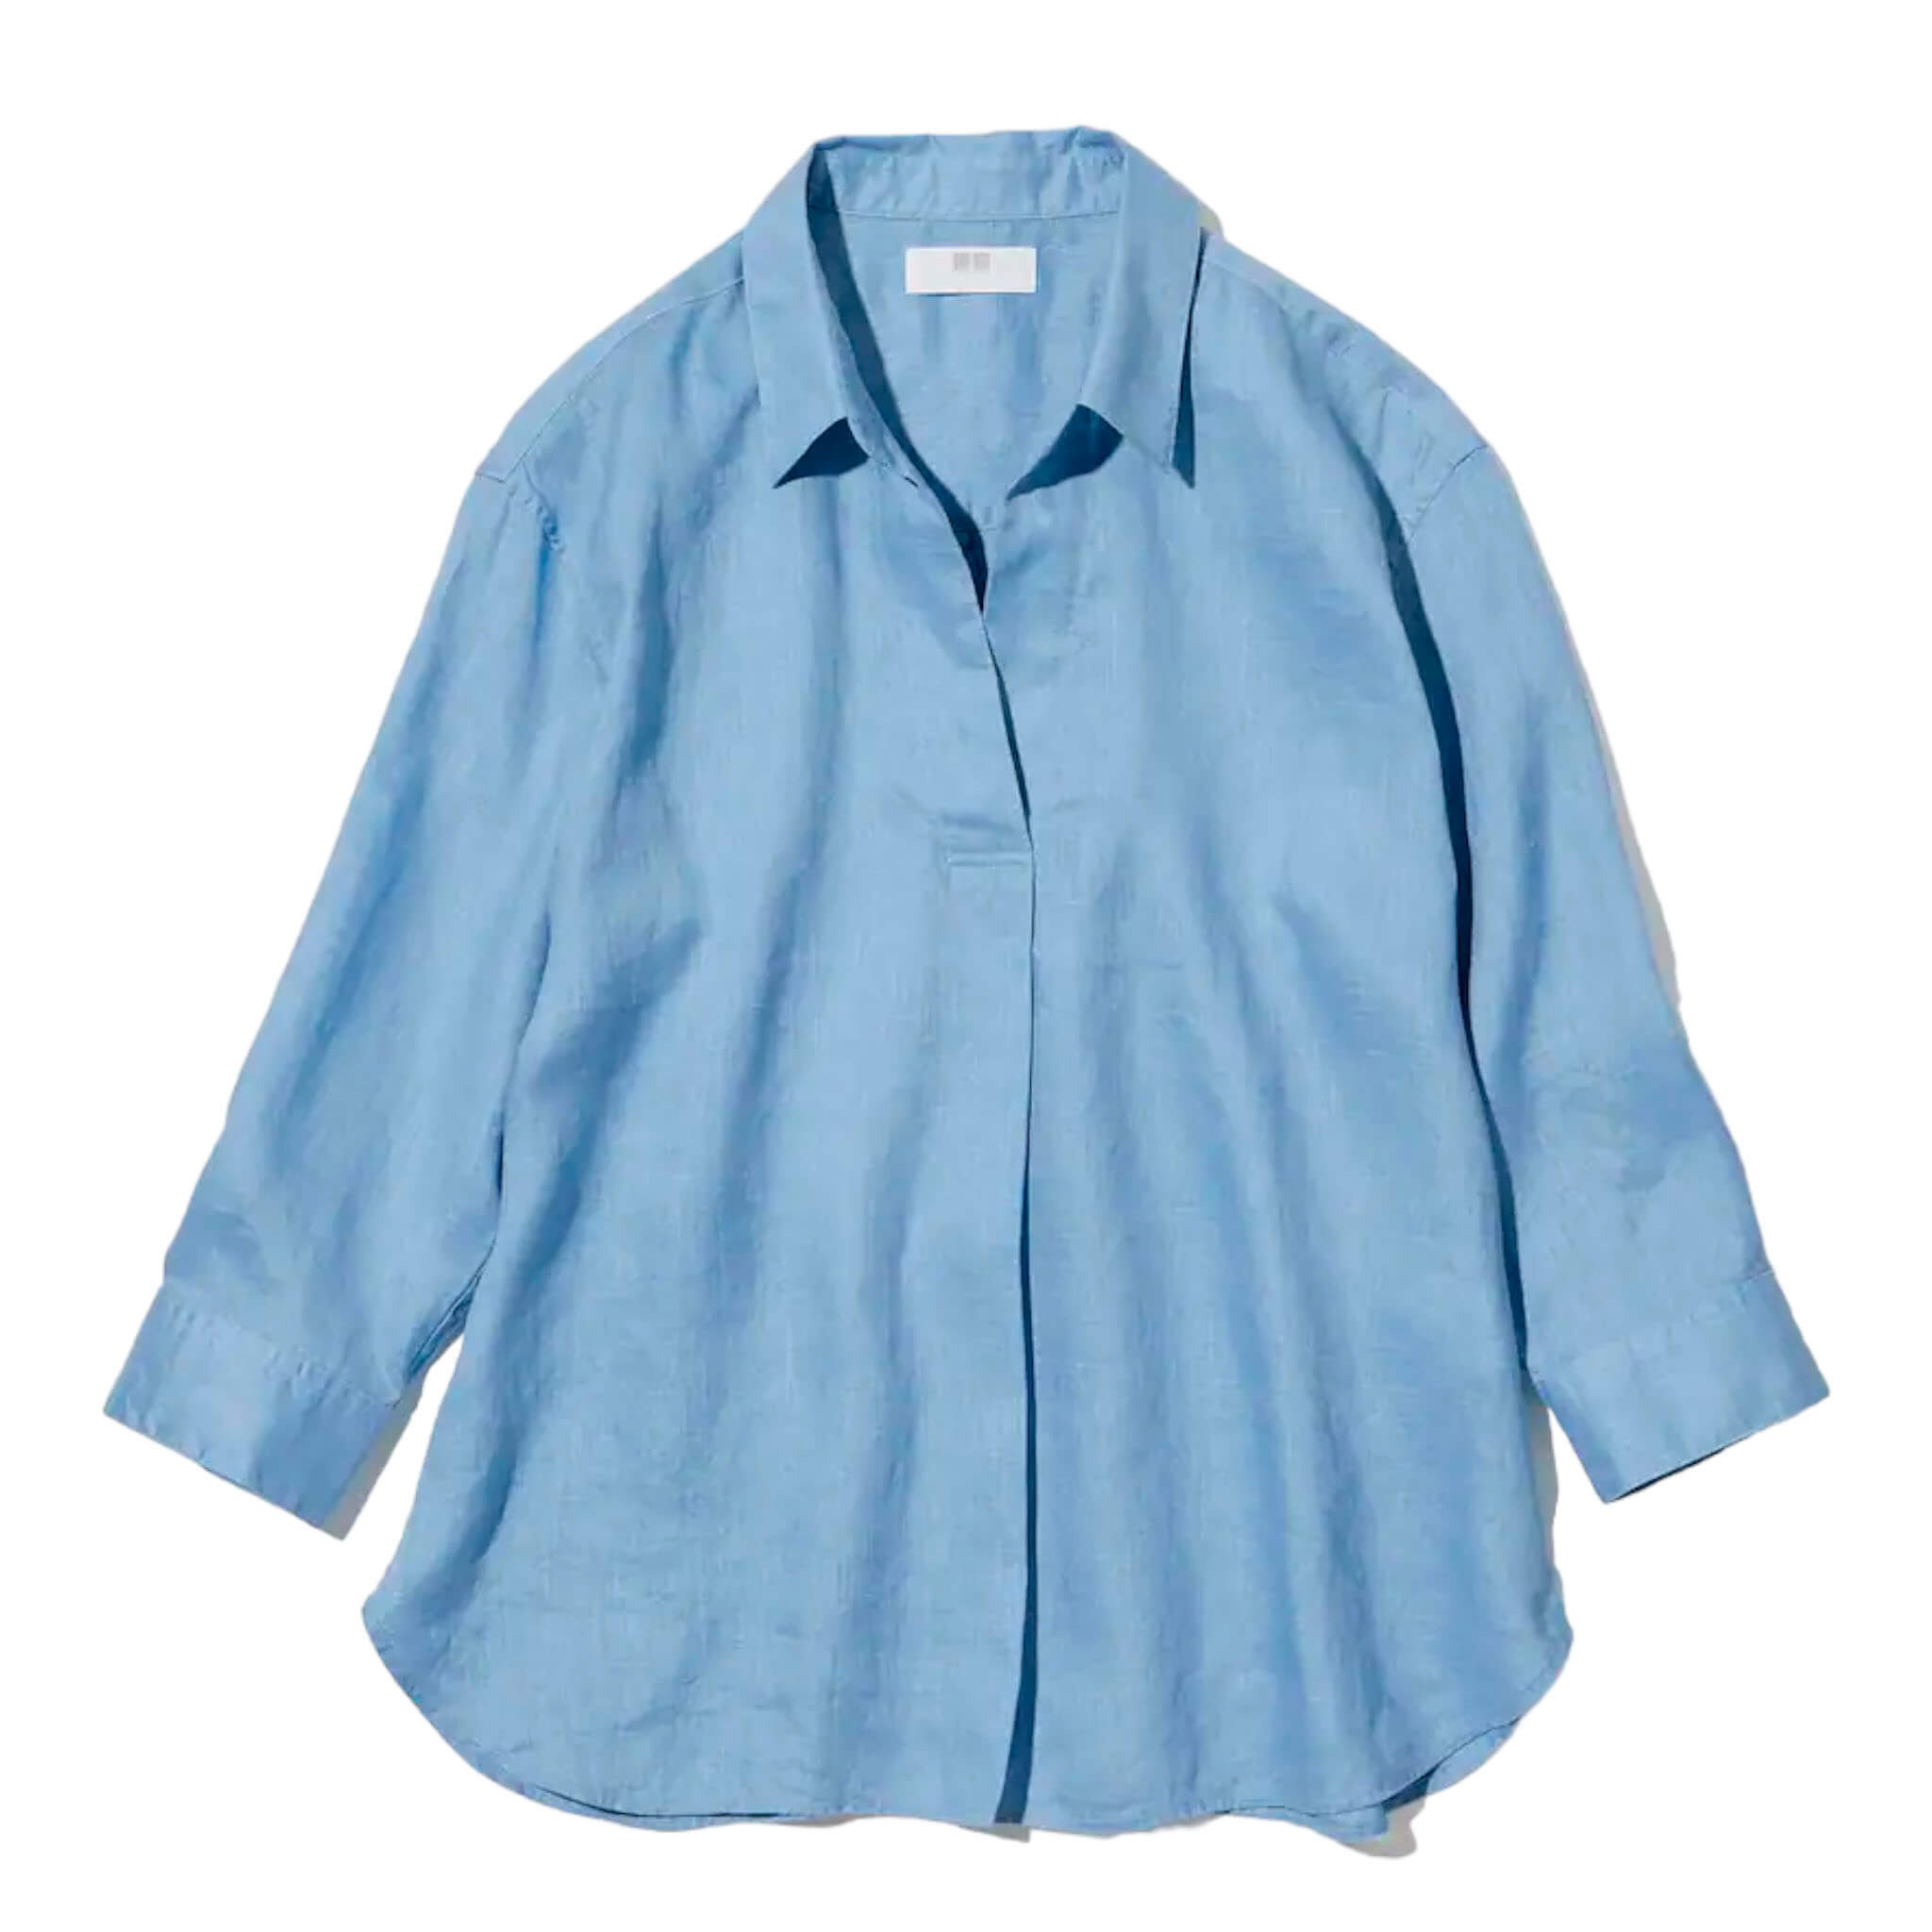 Рубашка Uniqlo Premium Linen Skipper Collar 3/4 Sleeved, голубой рубашка uniqlo 100% linen skipper collar 3 4 sleeve светло серый